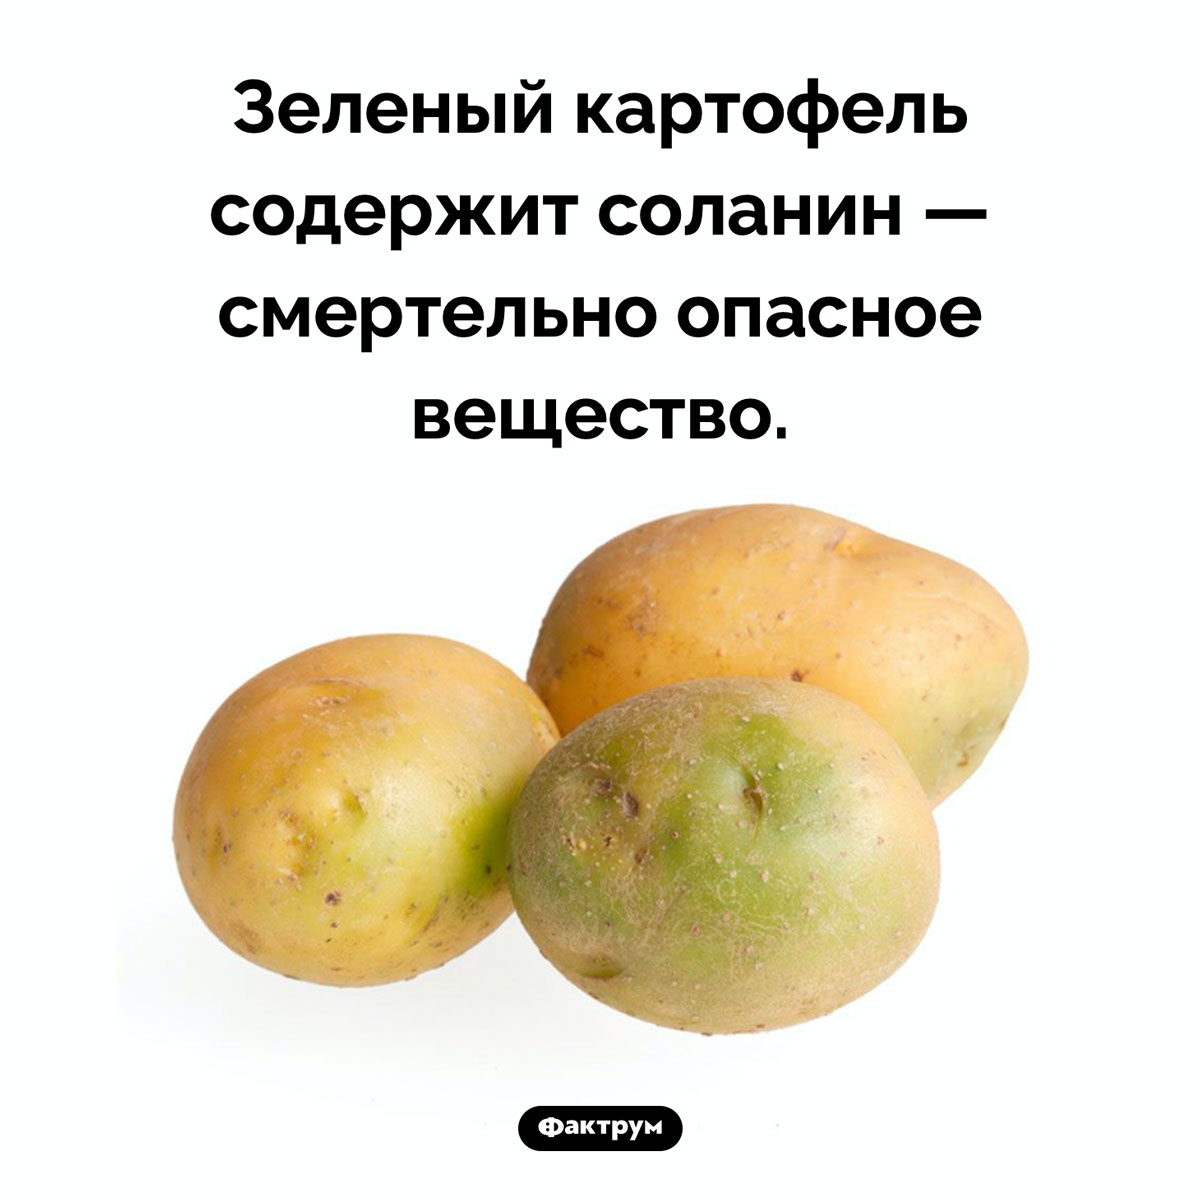 Зеленый картофель опасен. Зеленый картофель содержит соланин — смертельно опасное вещество.